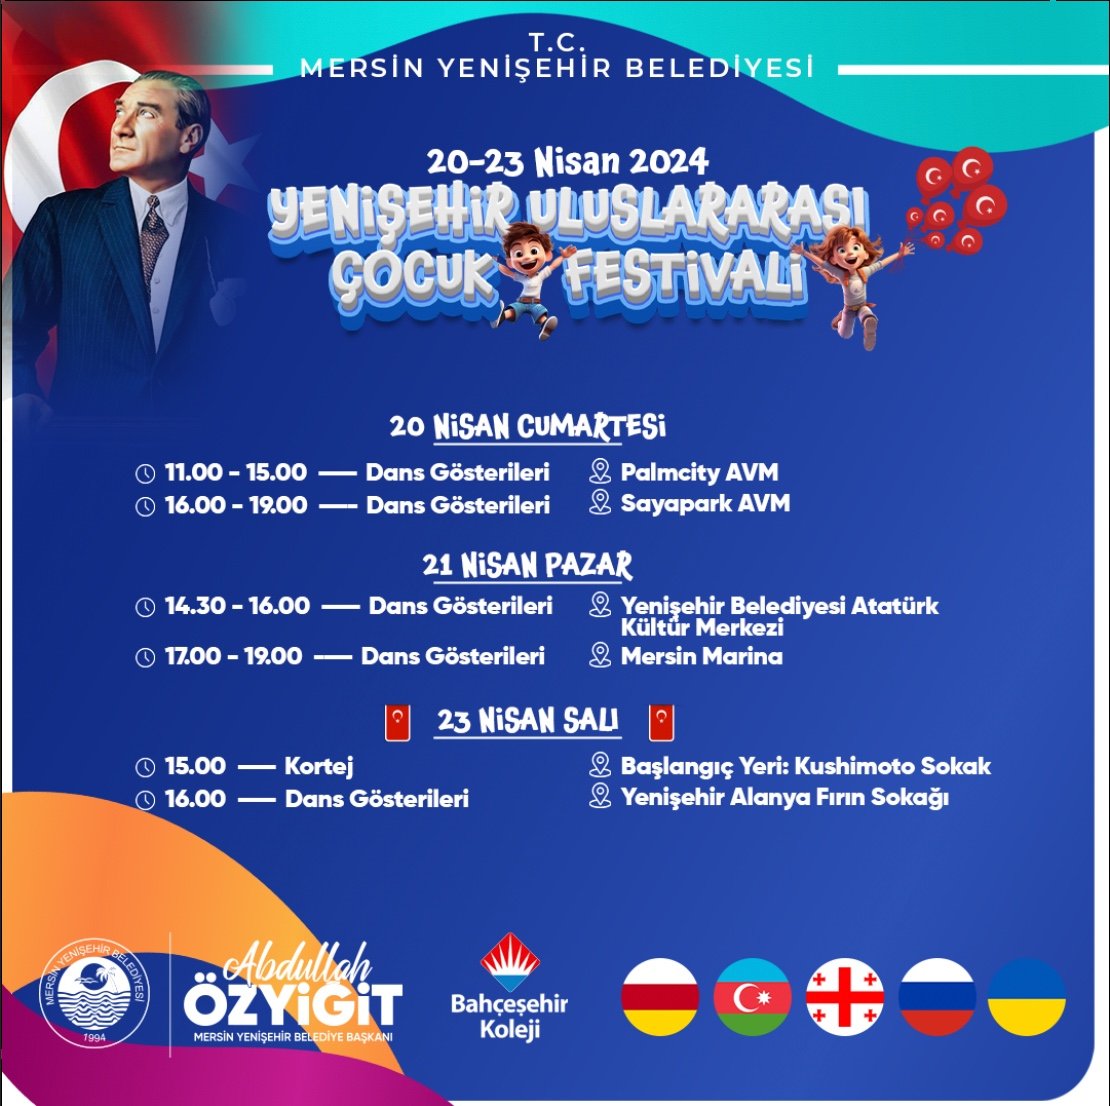 Cumhuriyetimizin kurucusu Mustafa Kemal Atatürk’ün Dünya çocuklarına armağan ettiği 23 Nisan Ulusal Egemenlik ve Çocuk Bayramı’nda 5 ülkeden çocukları kentimizde ağırlayacak, Yenişehirli çocuklarla buluşturacağız 🇹🇷😊 Yenişehir Uluslararası Çocuk Festivali’mize bekliyoruz 🫶